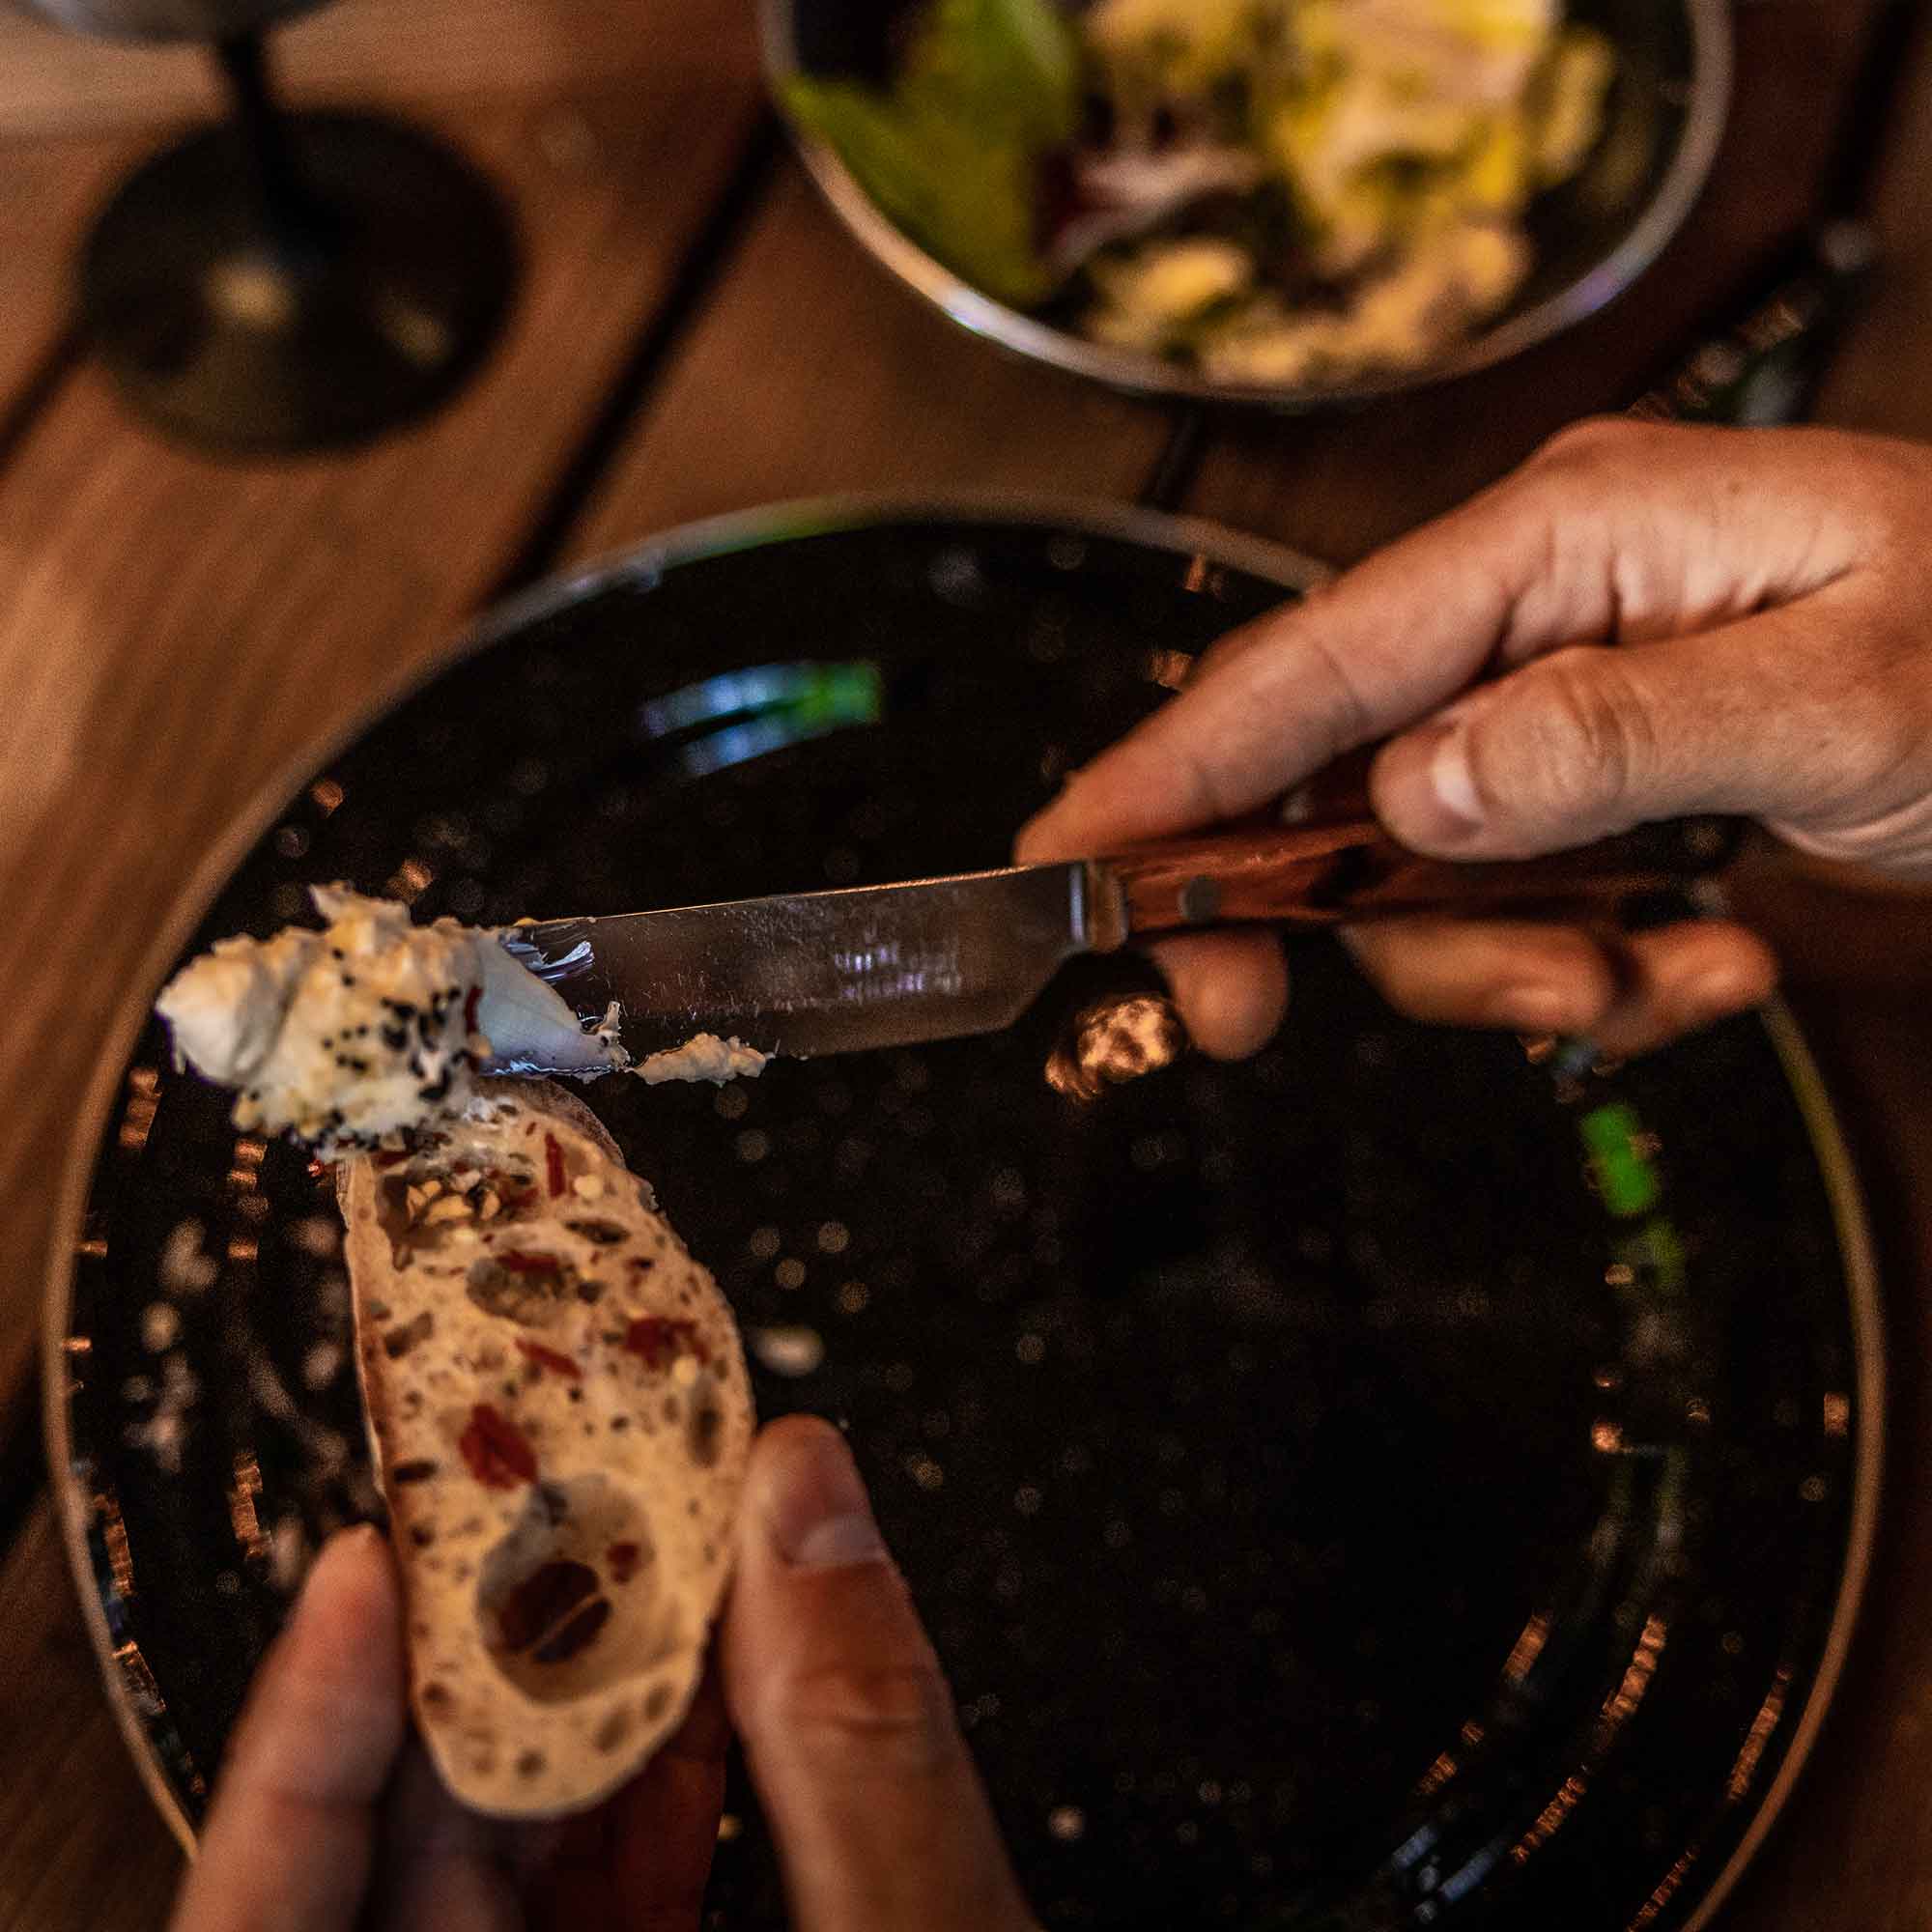 Rakau Table Knife